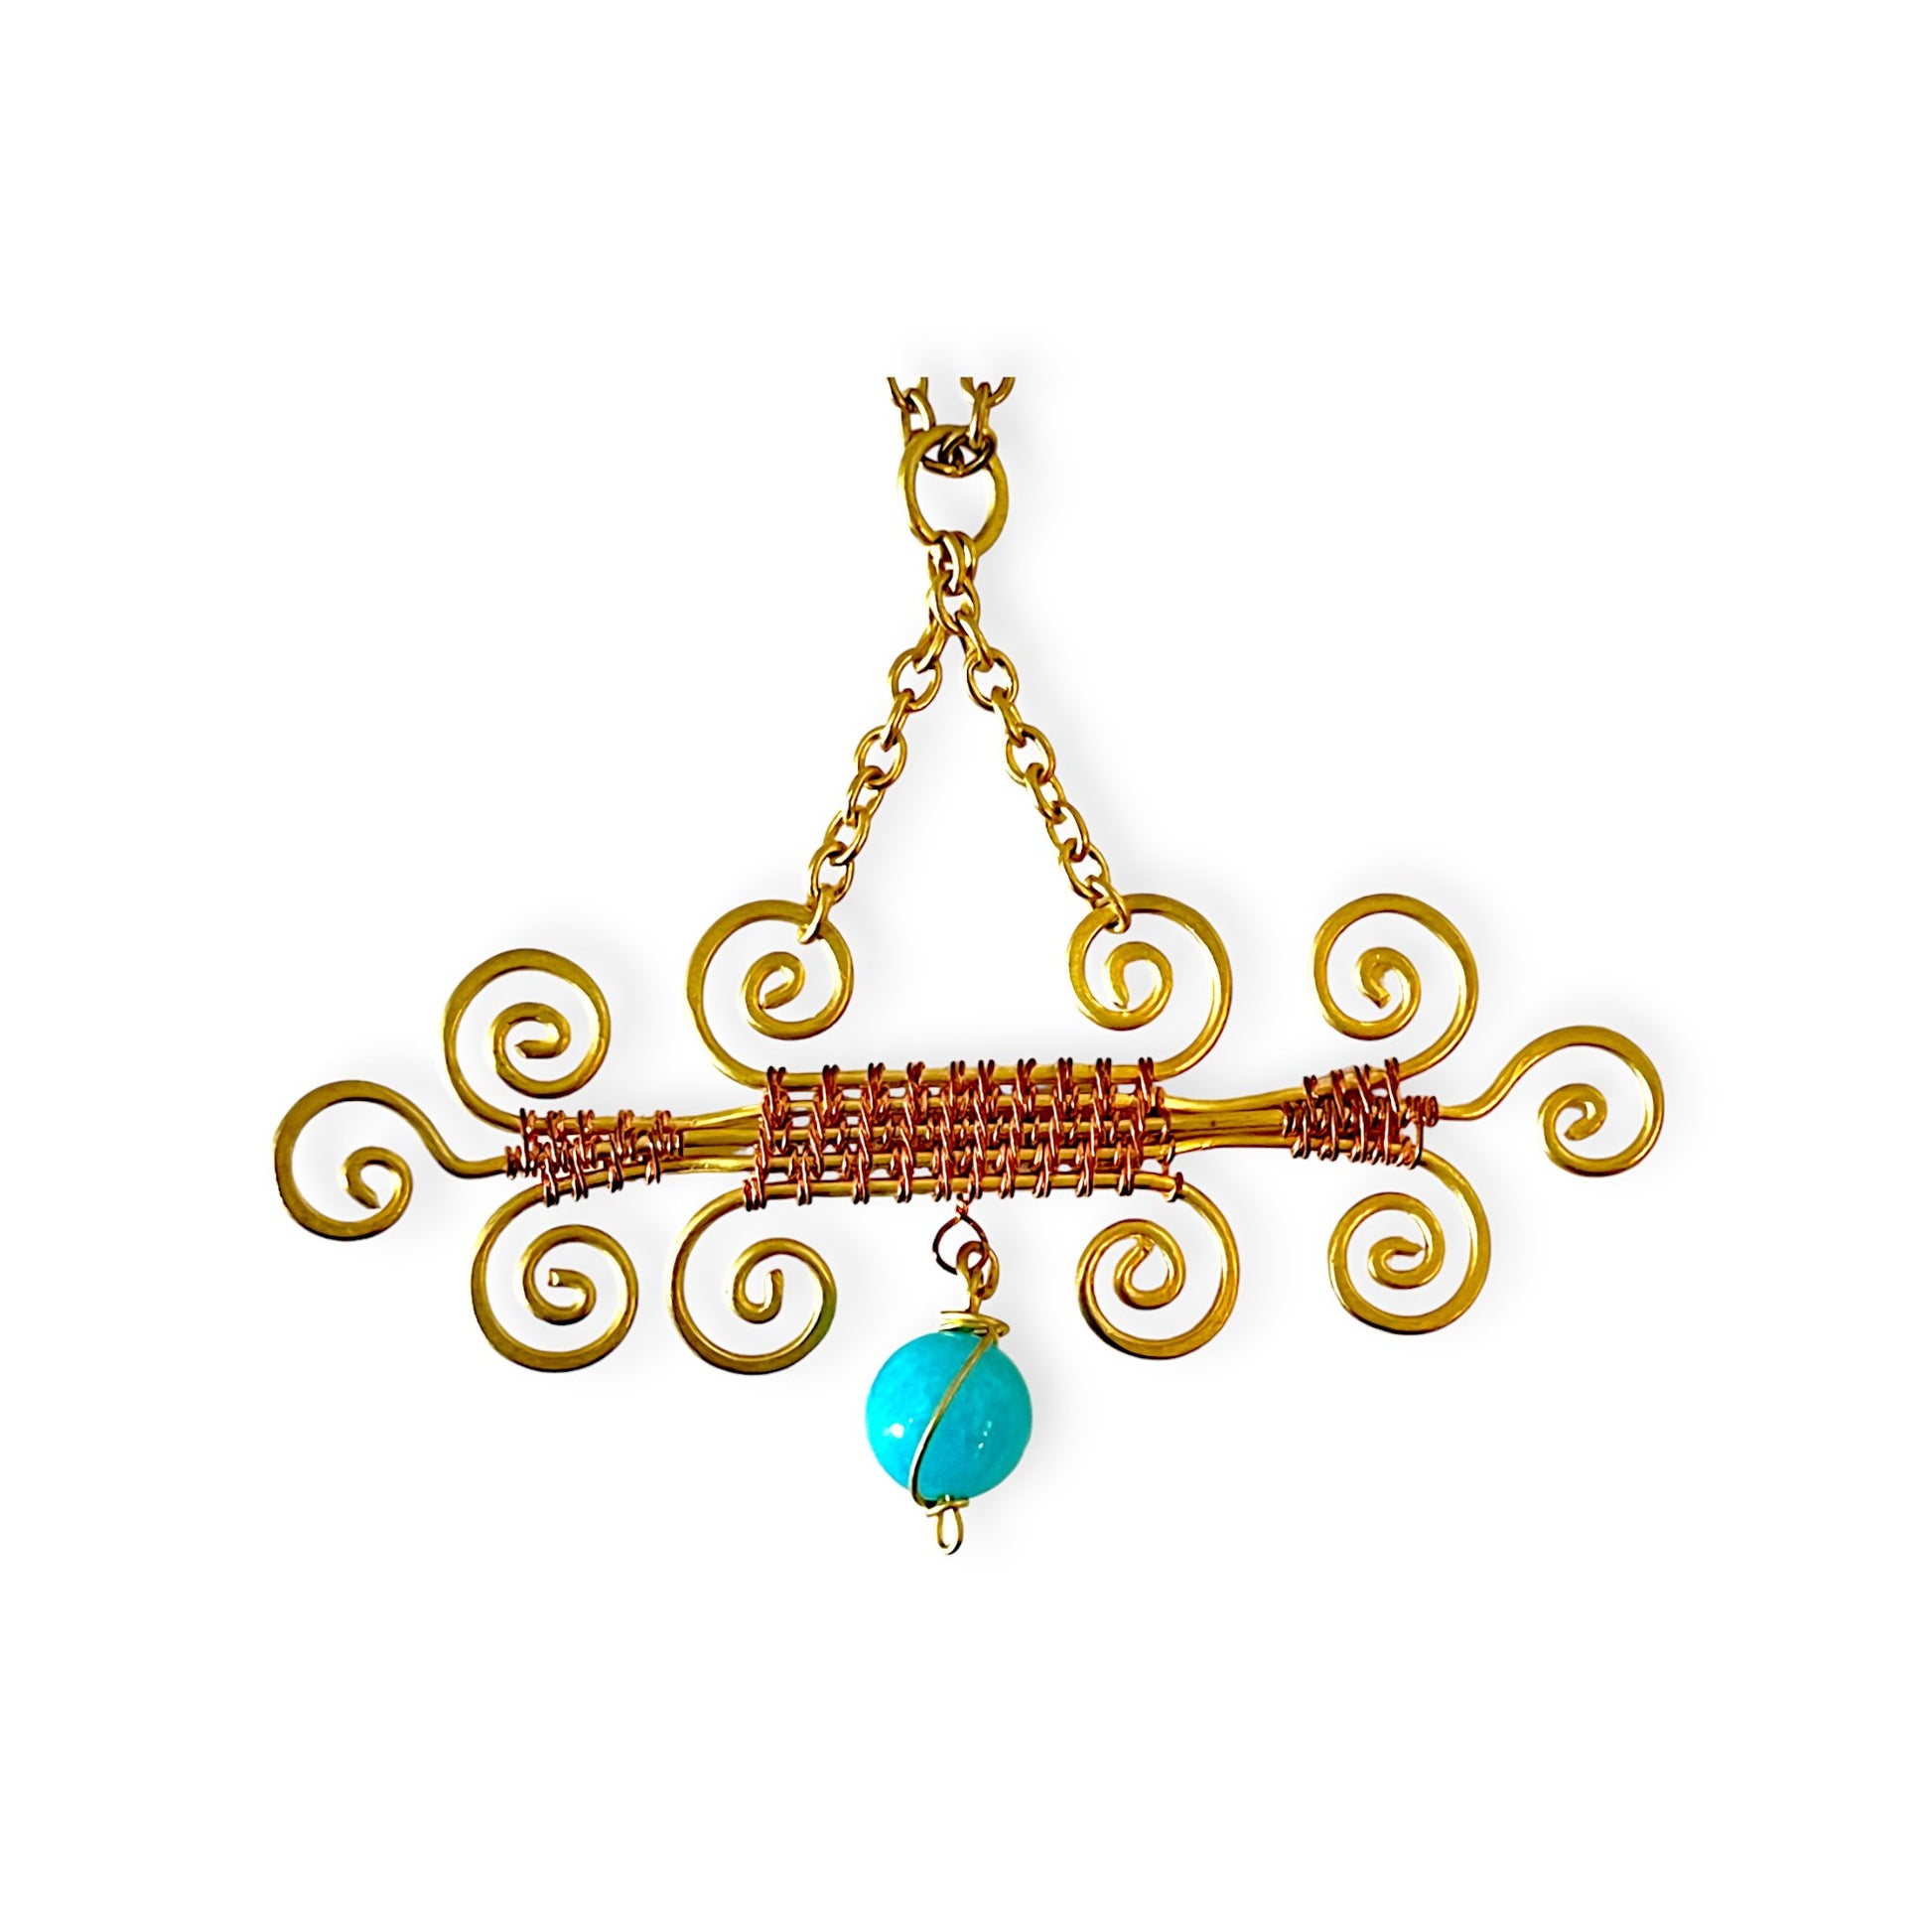 Colorful scroll designed pendant necklace - Sundara Joon